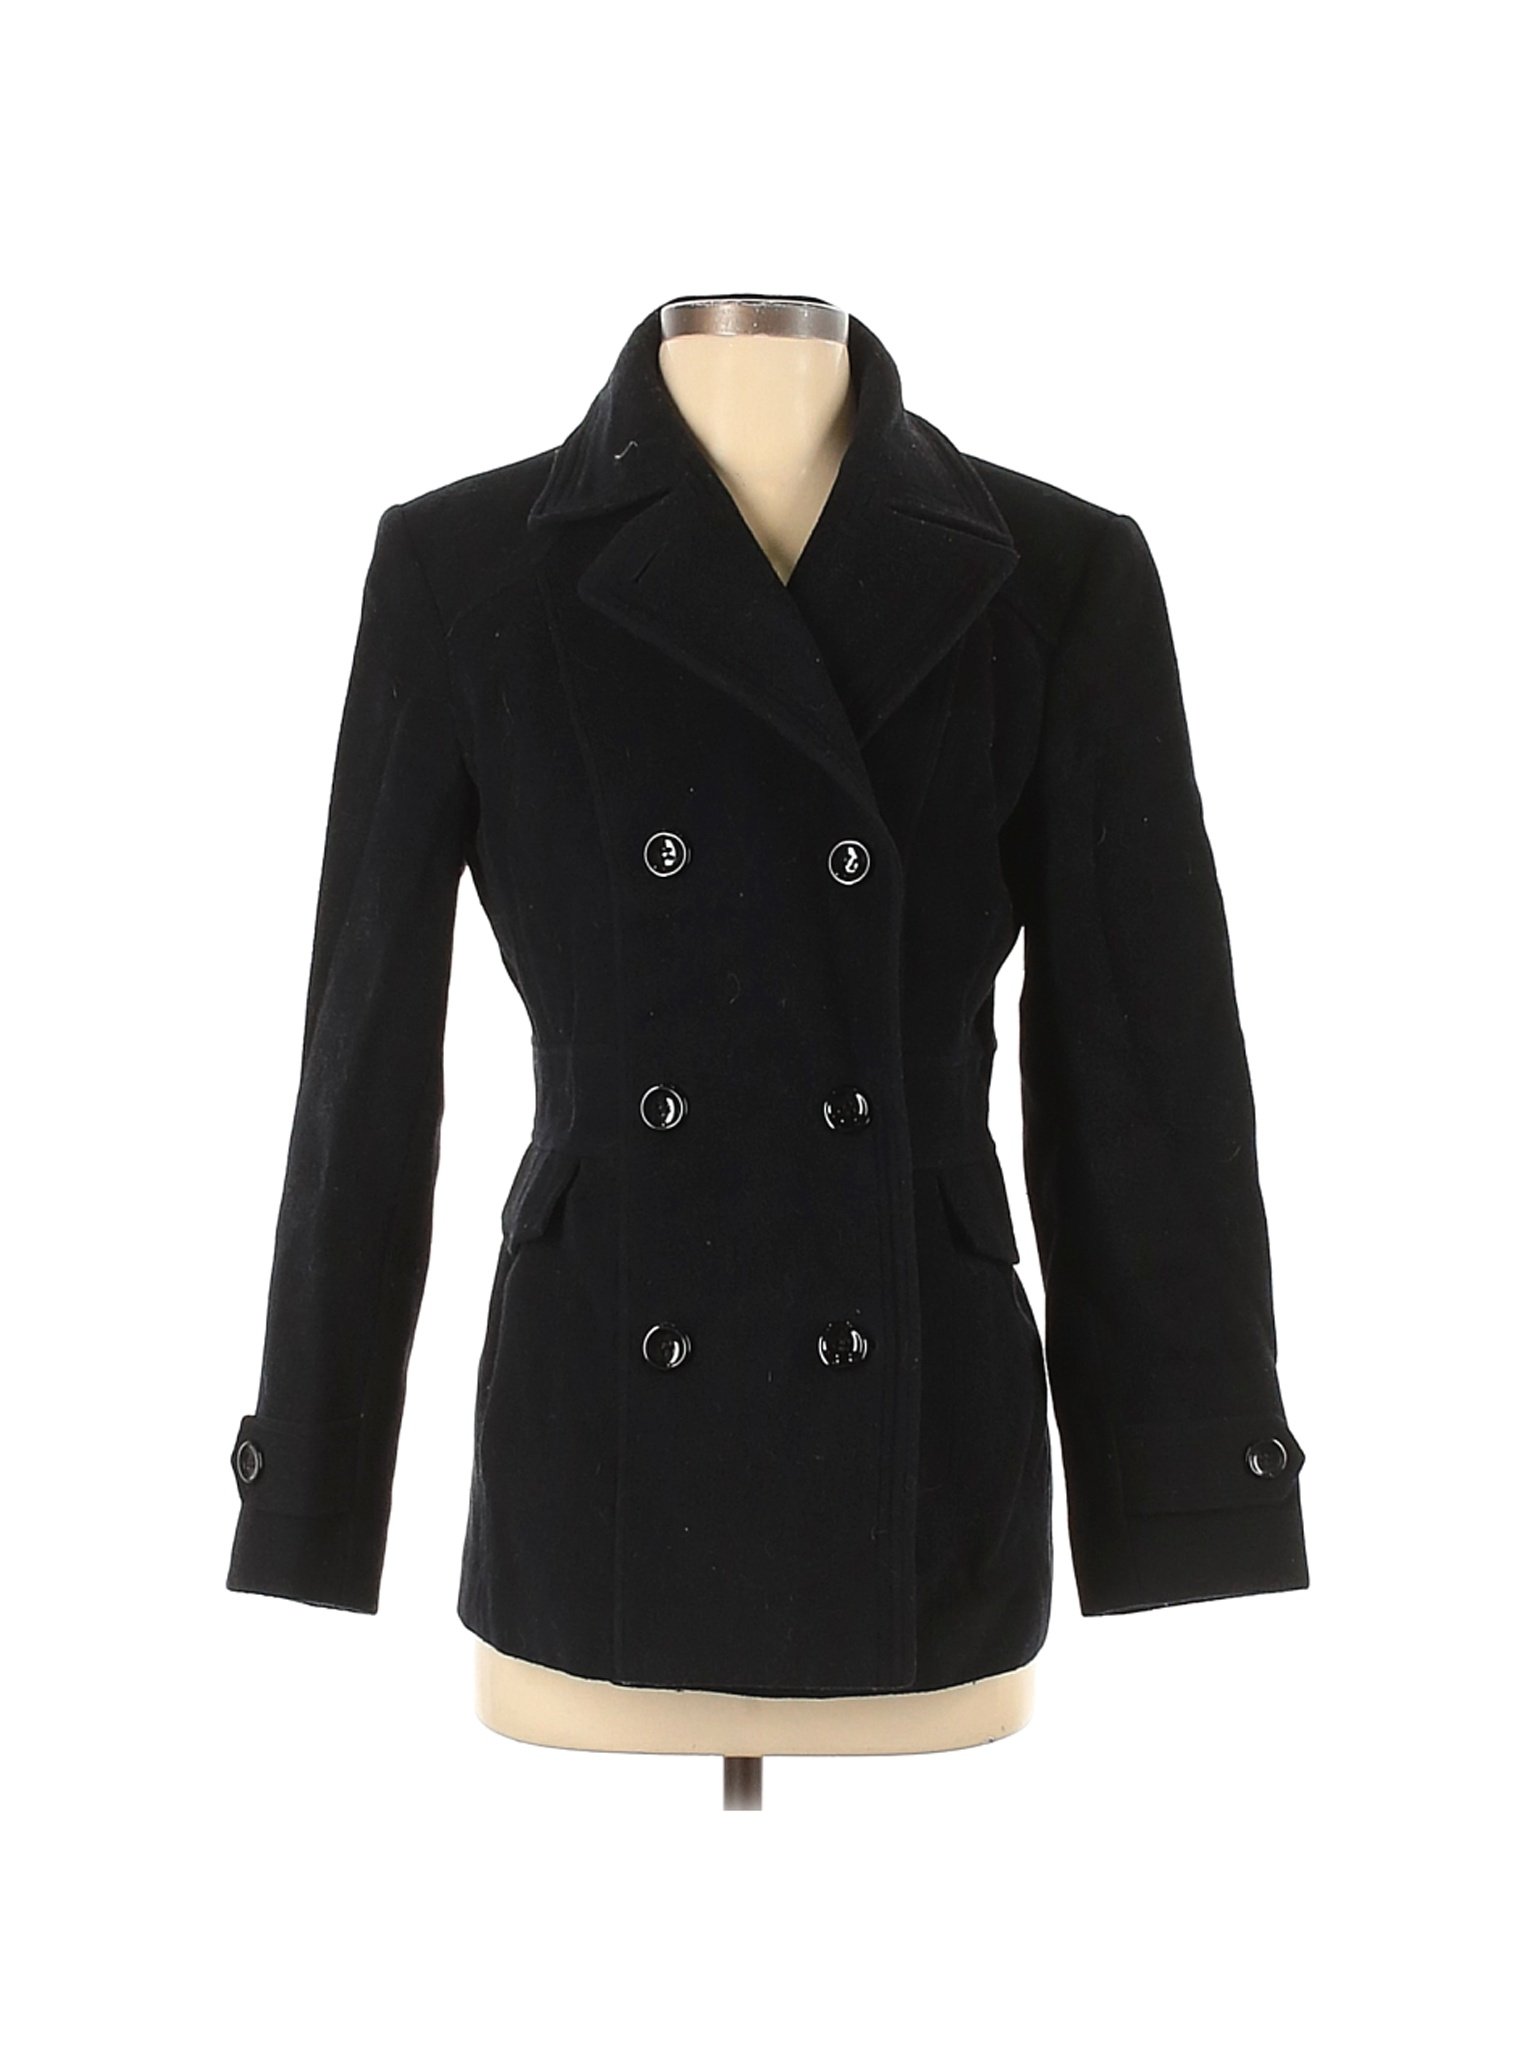 St. John's Bay Women Black Wool Coat S | eBay